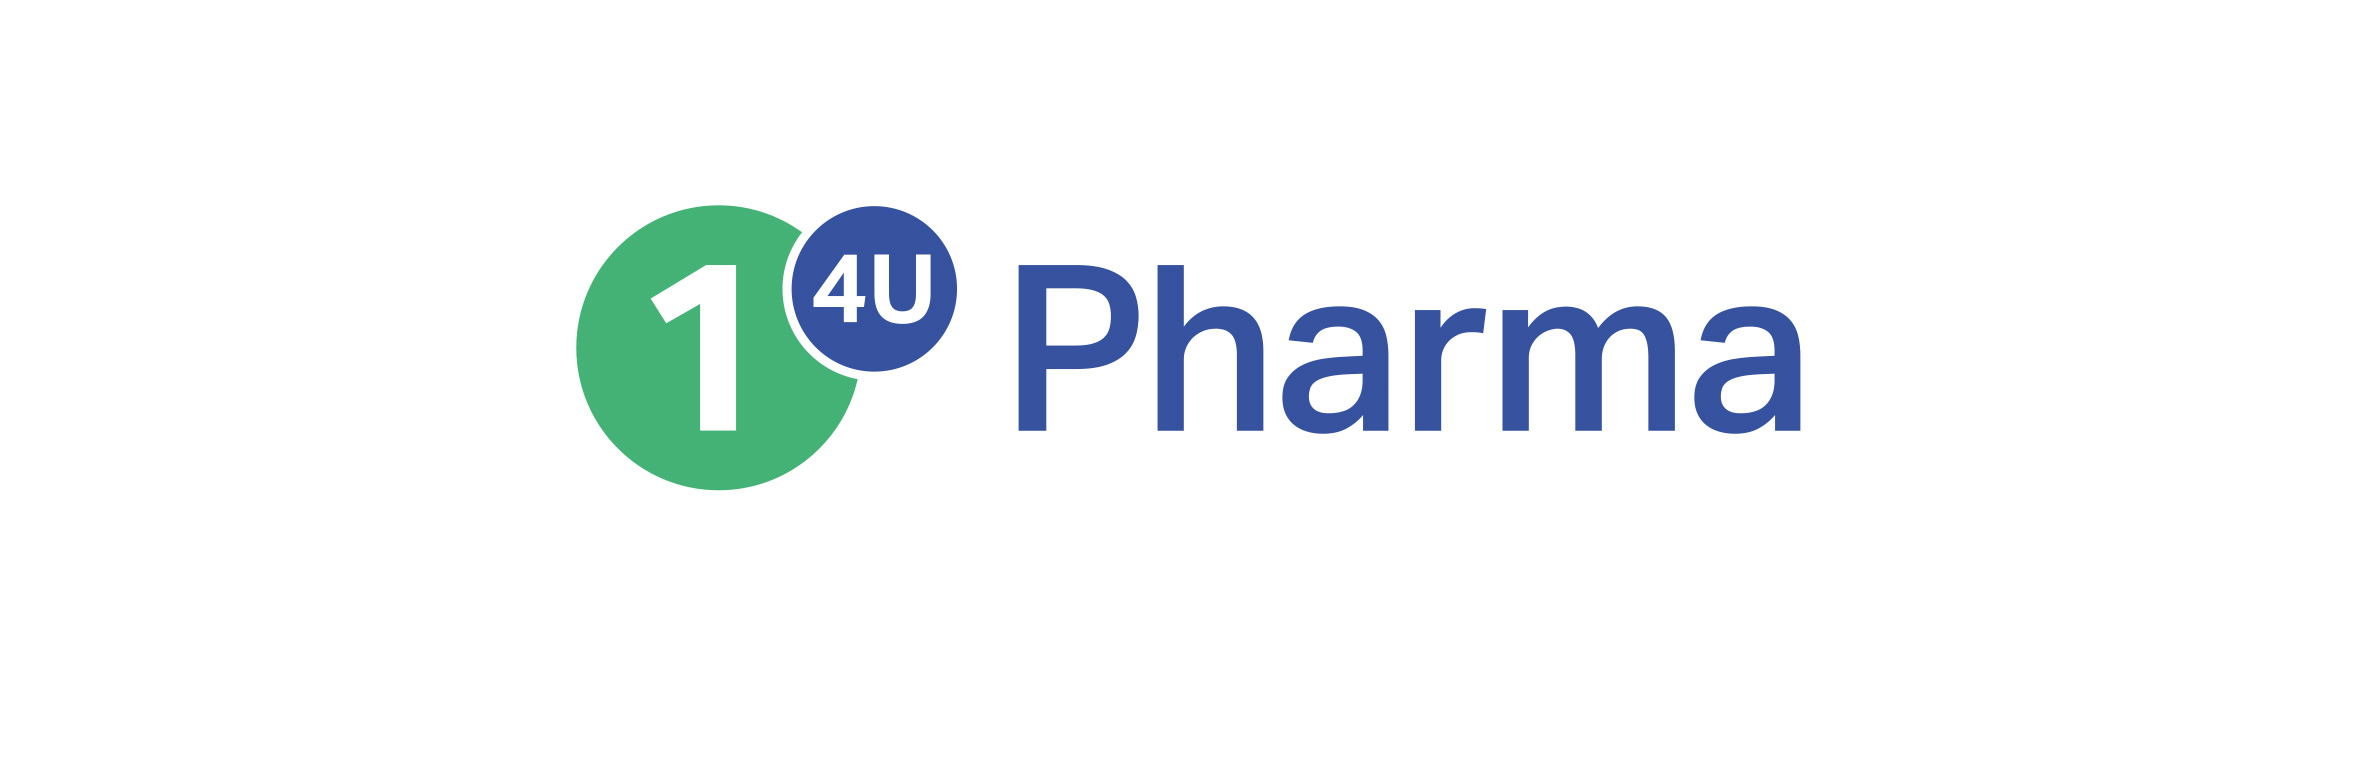 CC Pharma bringt neues Tochterunternehmen 1 4 U Pharma an den Markt | Medienservice für Journalisten